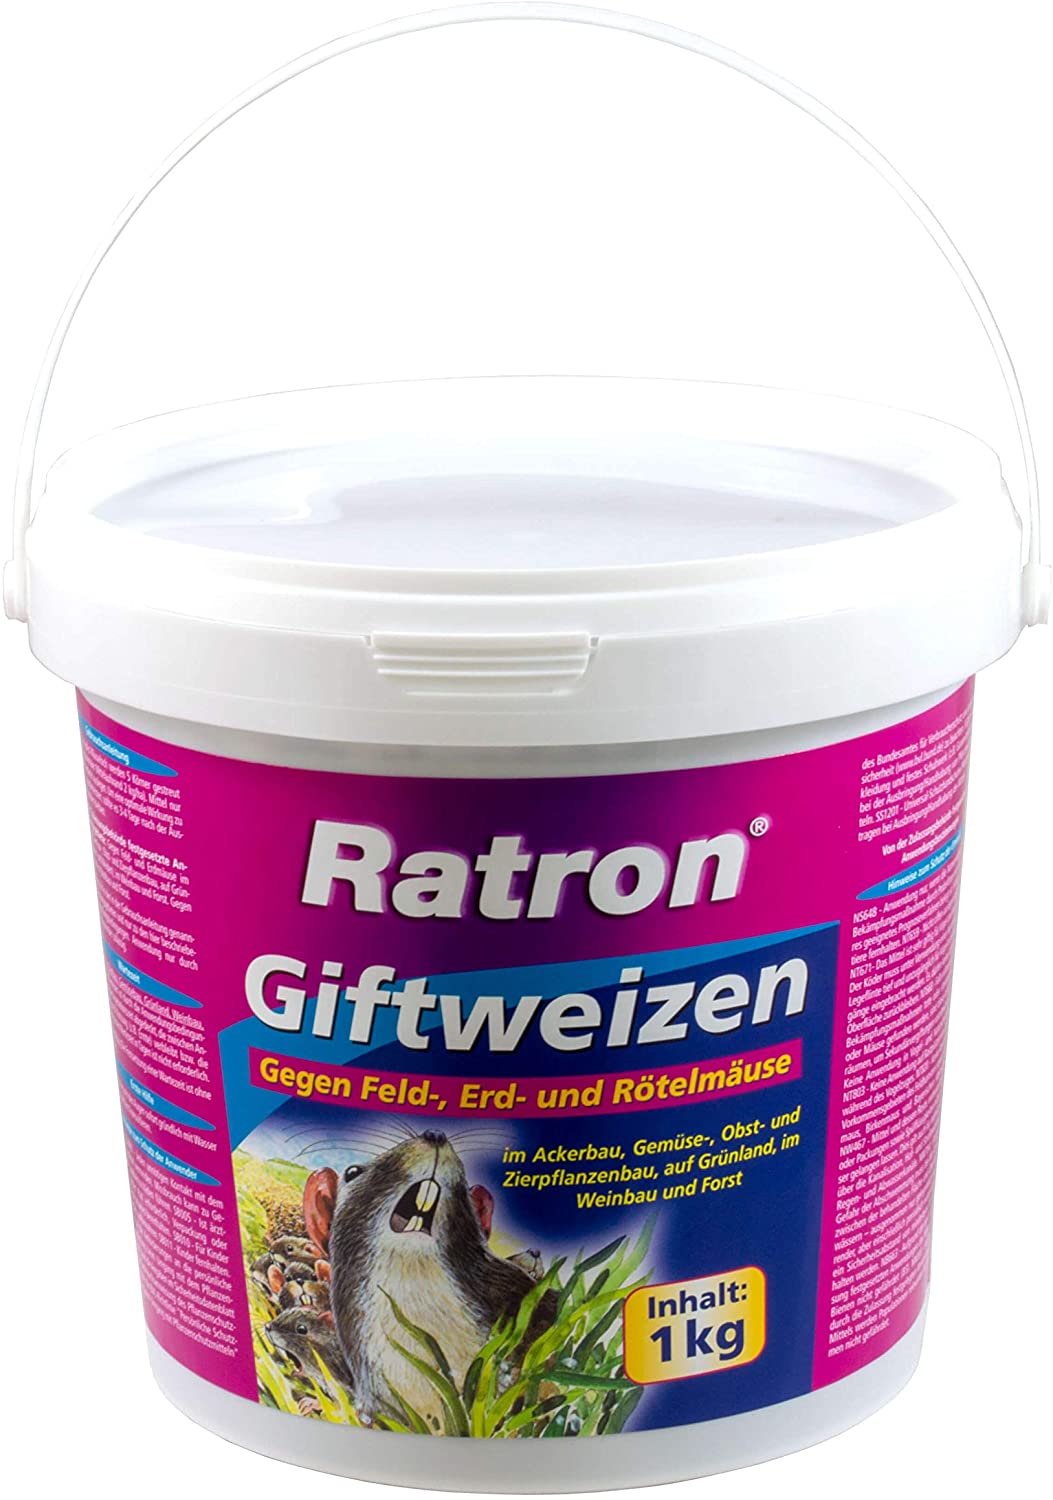 Ratten Im Garten Was Tun Einzigartig Frunol Ratron Giftweizen 1 Kg Amazon Garten